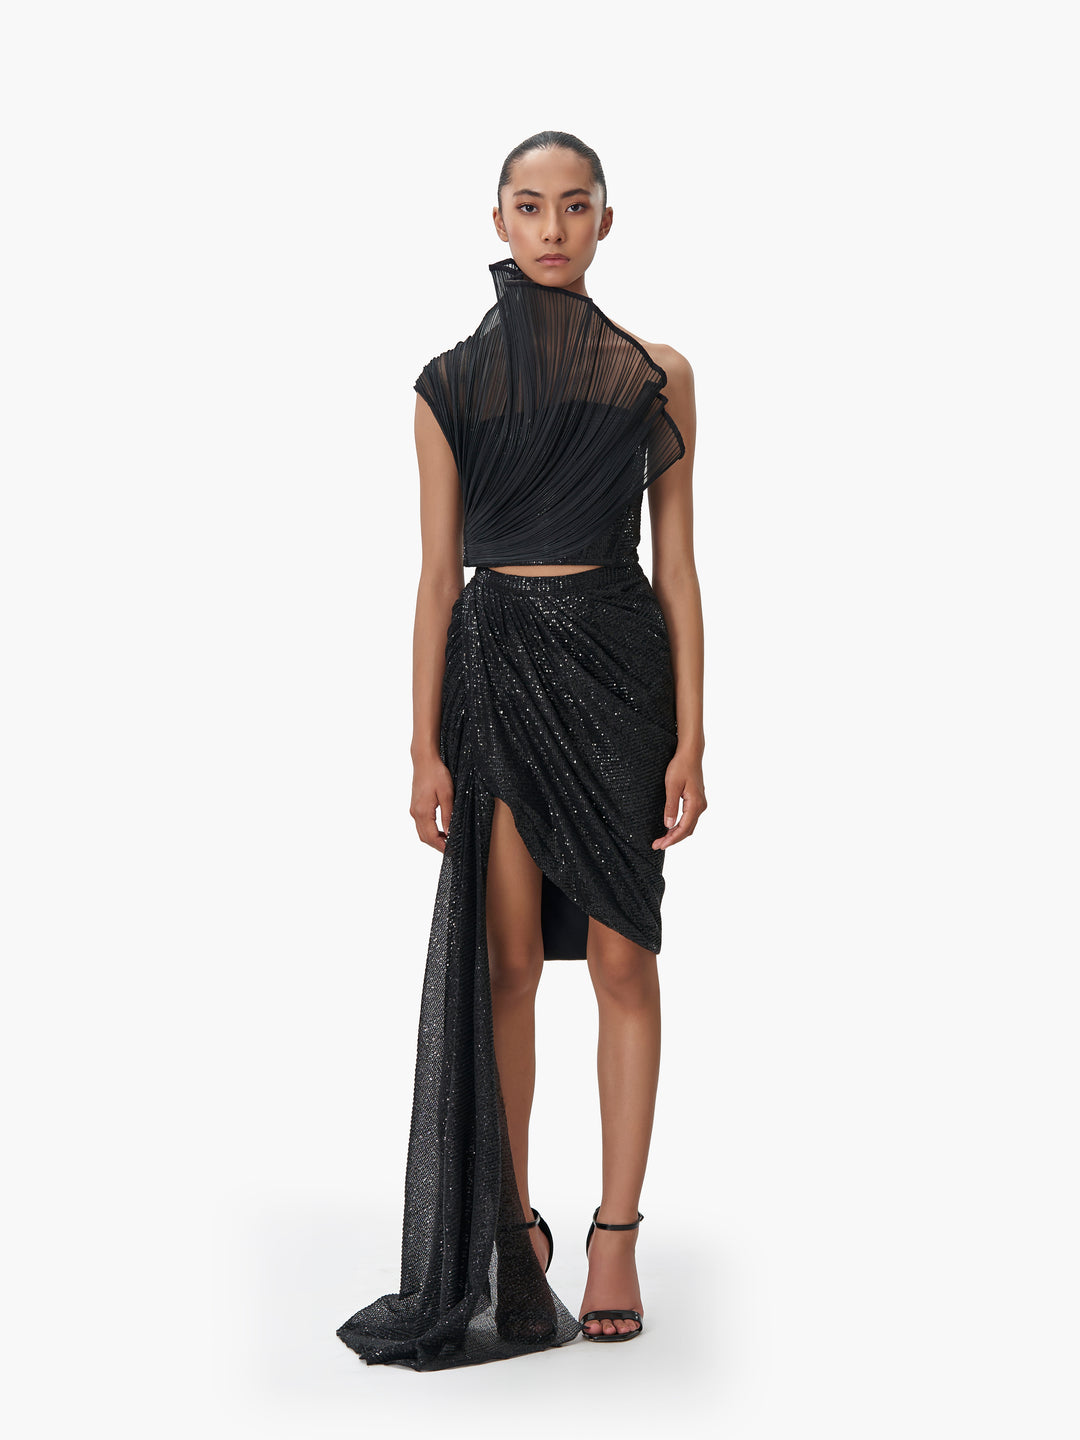 The Mini Black Sequin Draped Skirt